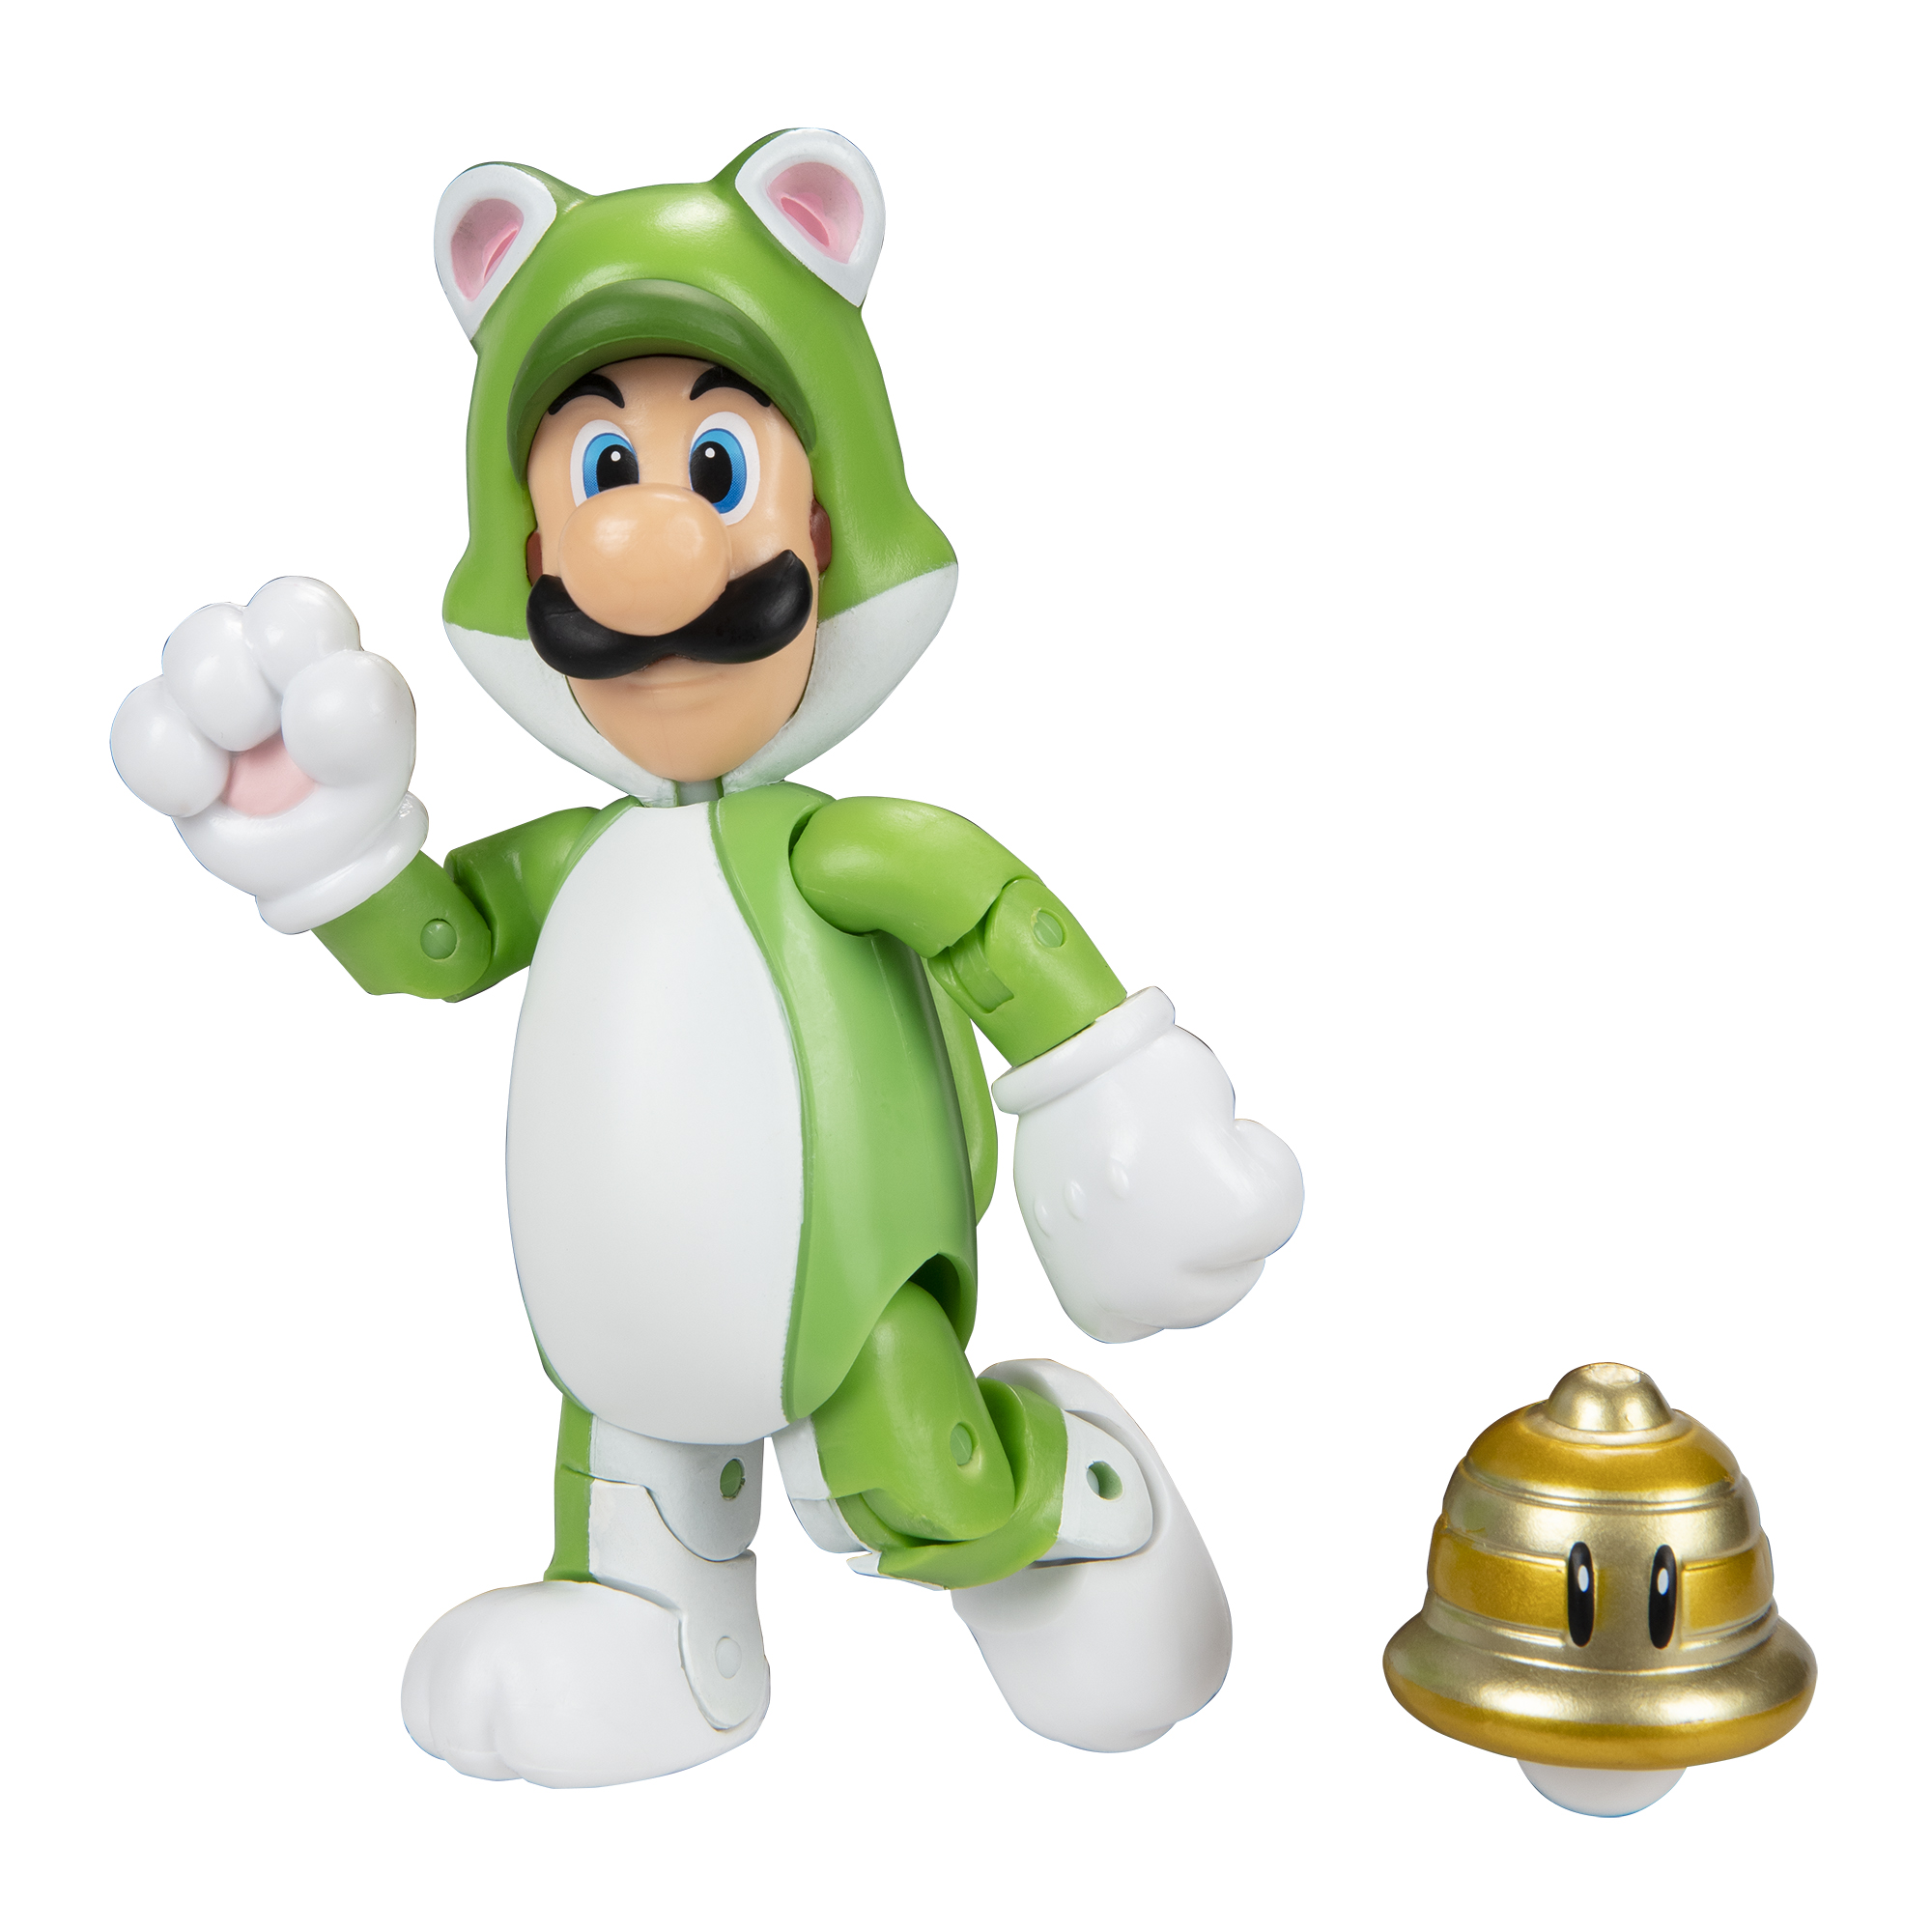 SUPER MARIO Nintendo Super Mario Spielware Figur Superball, 10 cm with Cat Luigi